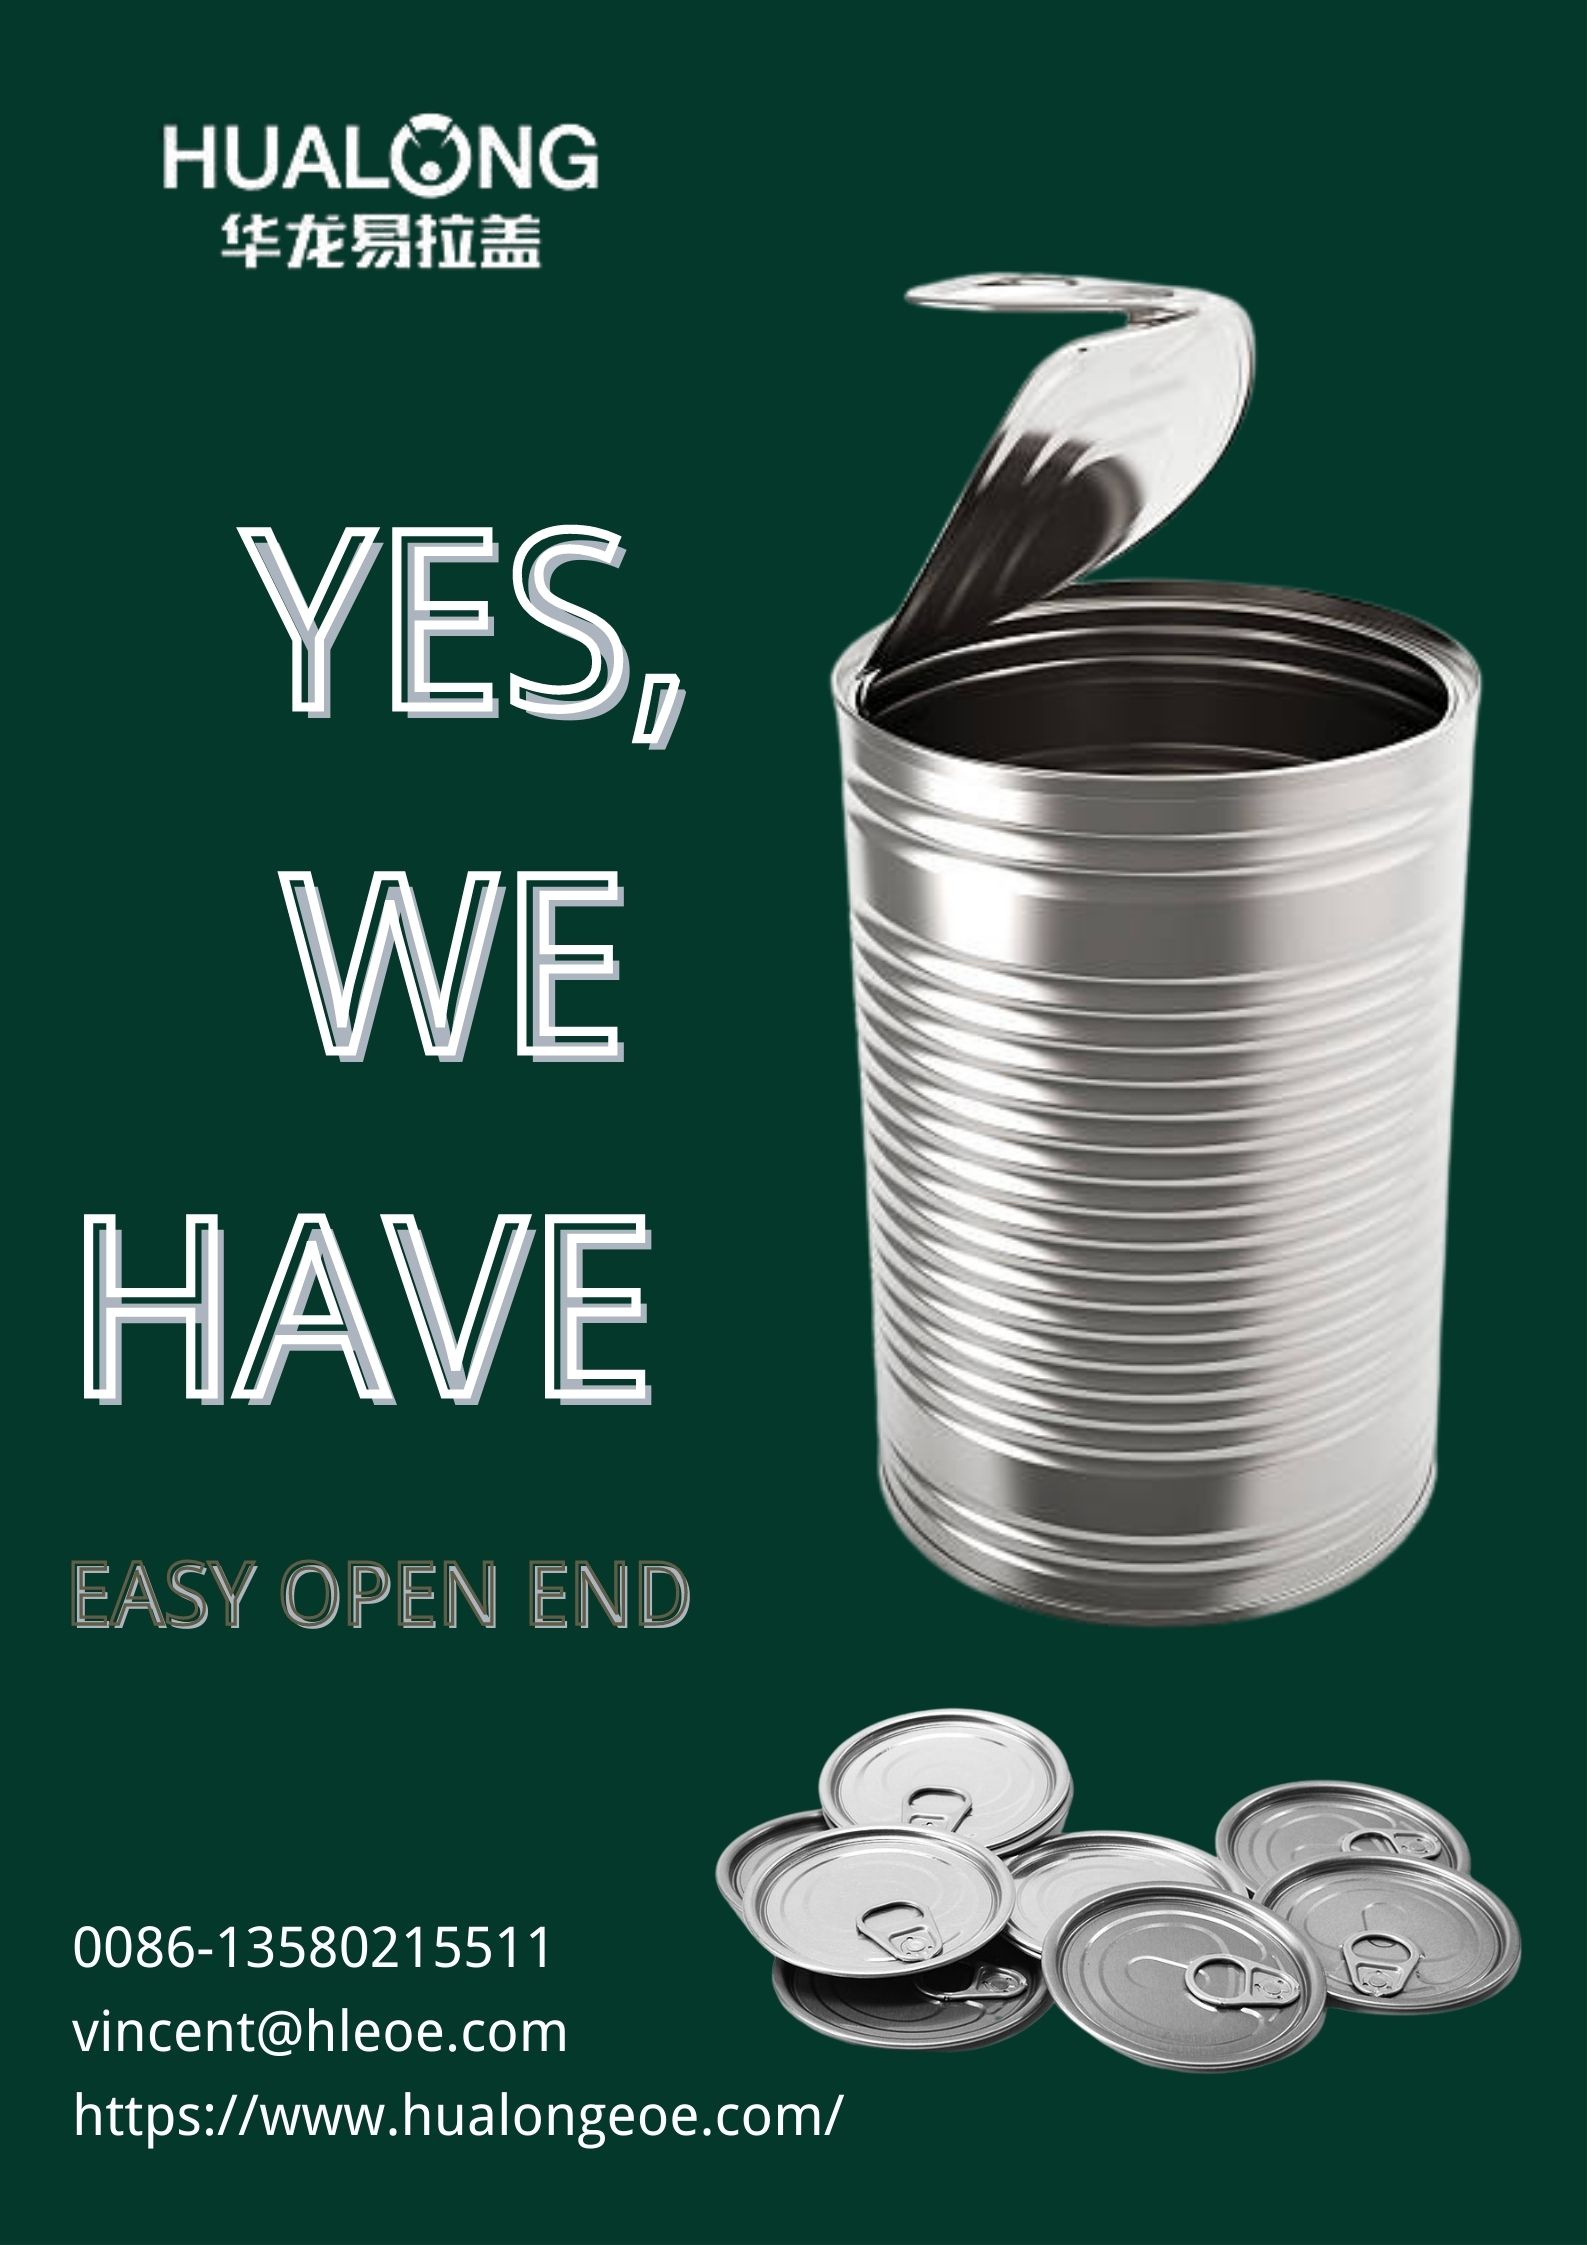 Hualong EOE: como reciclar correctamente o extremo aberto fácil?